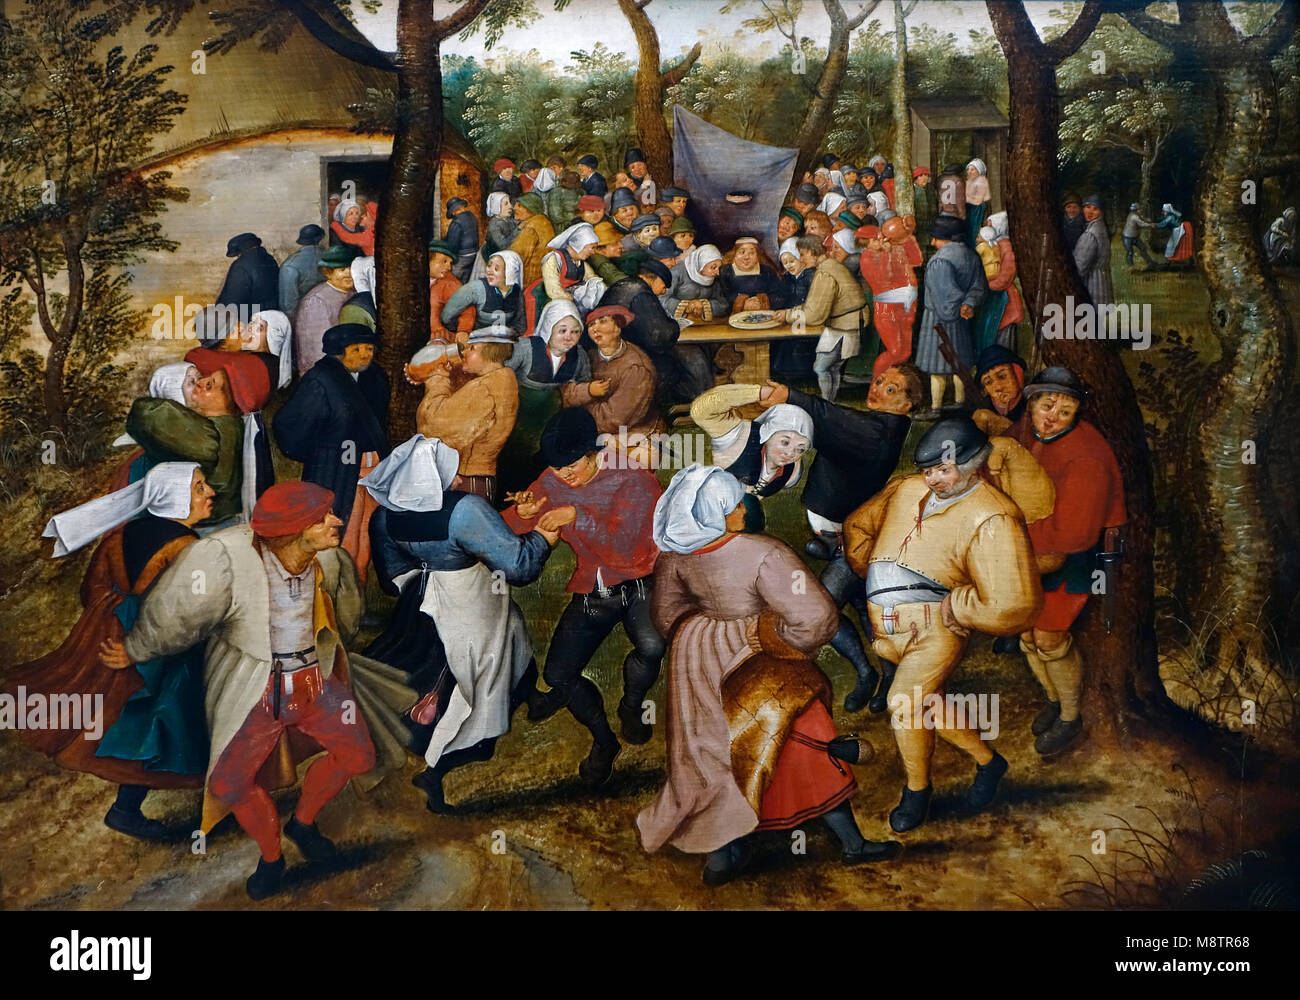 Danse de mariage en plein air, 17e siècle huile sur toile de peintre de la Renaissance du Nord flamand Pieter Brueghel le Jeune / Pieter Bruegel le Jeune Banque D'Images